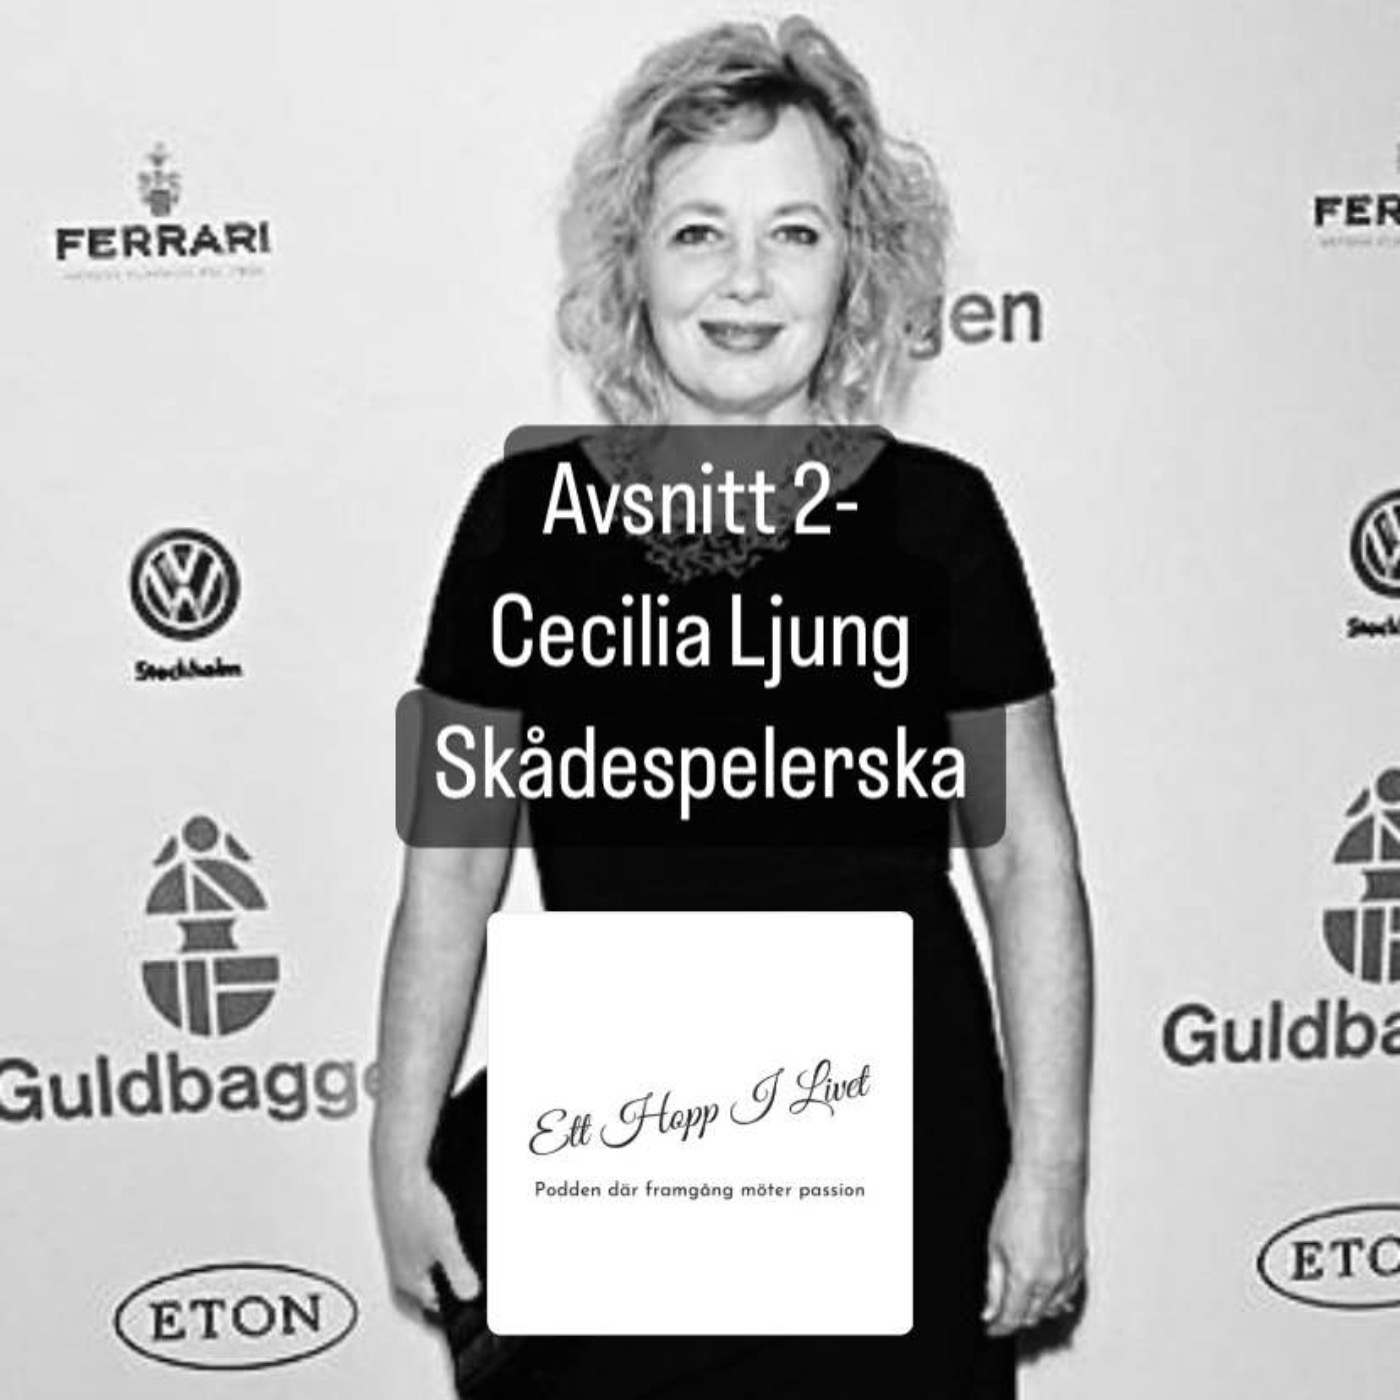 Cecilia Ljung